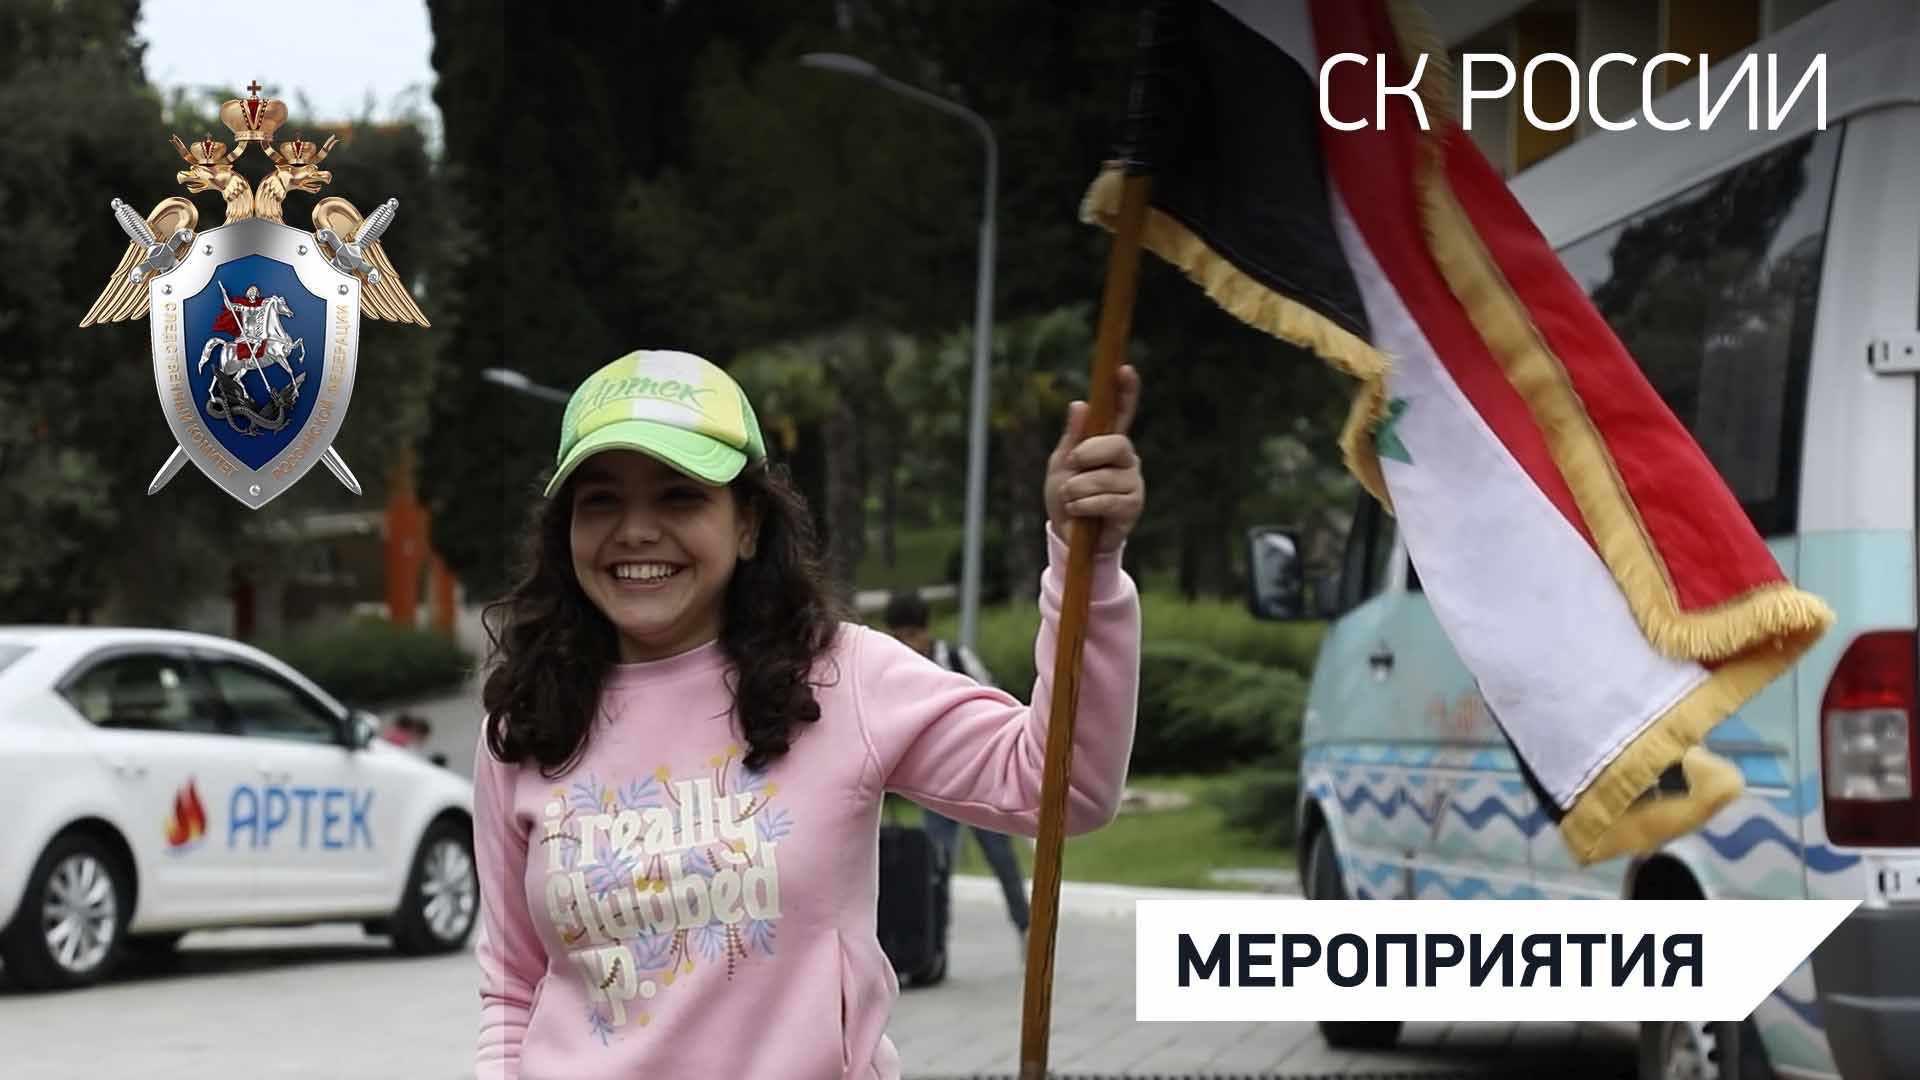 Дети из САР по приглашению офицеров СК России отдохнули во Всероссийском детском центре «Артек»